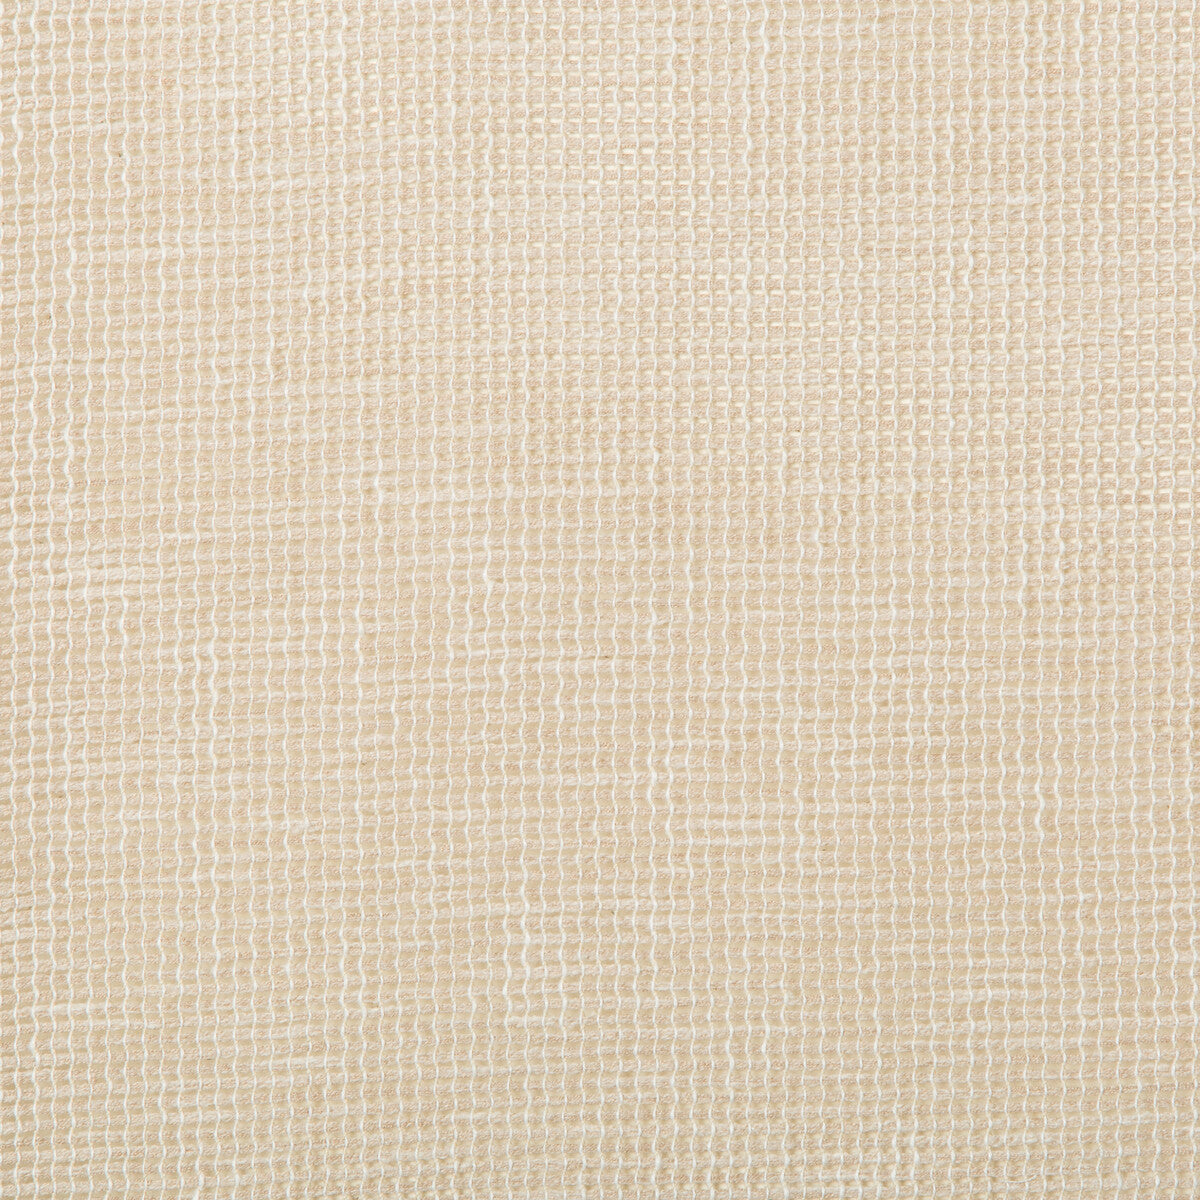 Kravet Basics fabric in 4675-16 color - pattern 4675.16.0 - by Kravet Basics